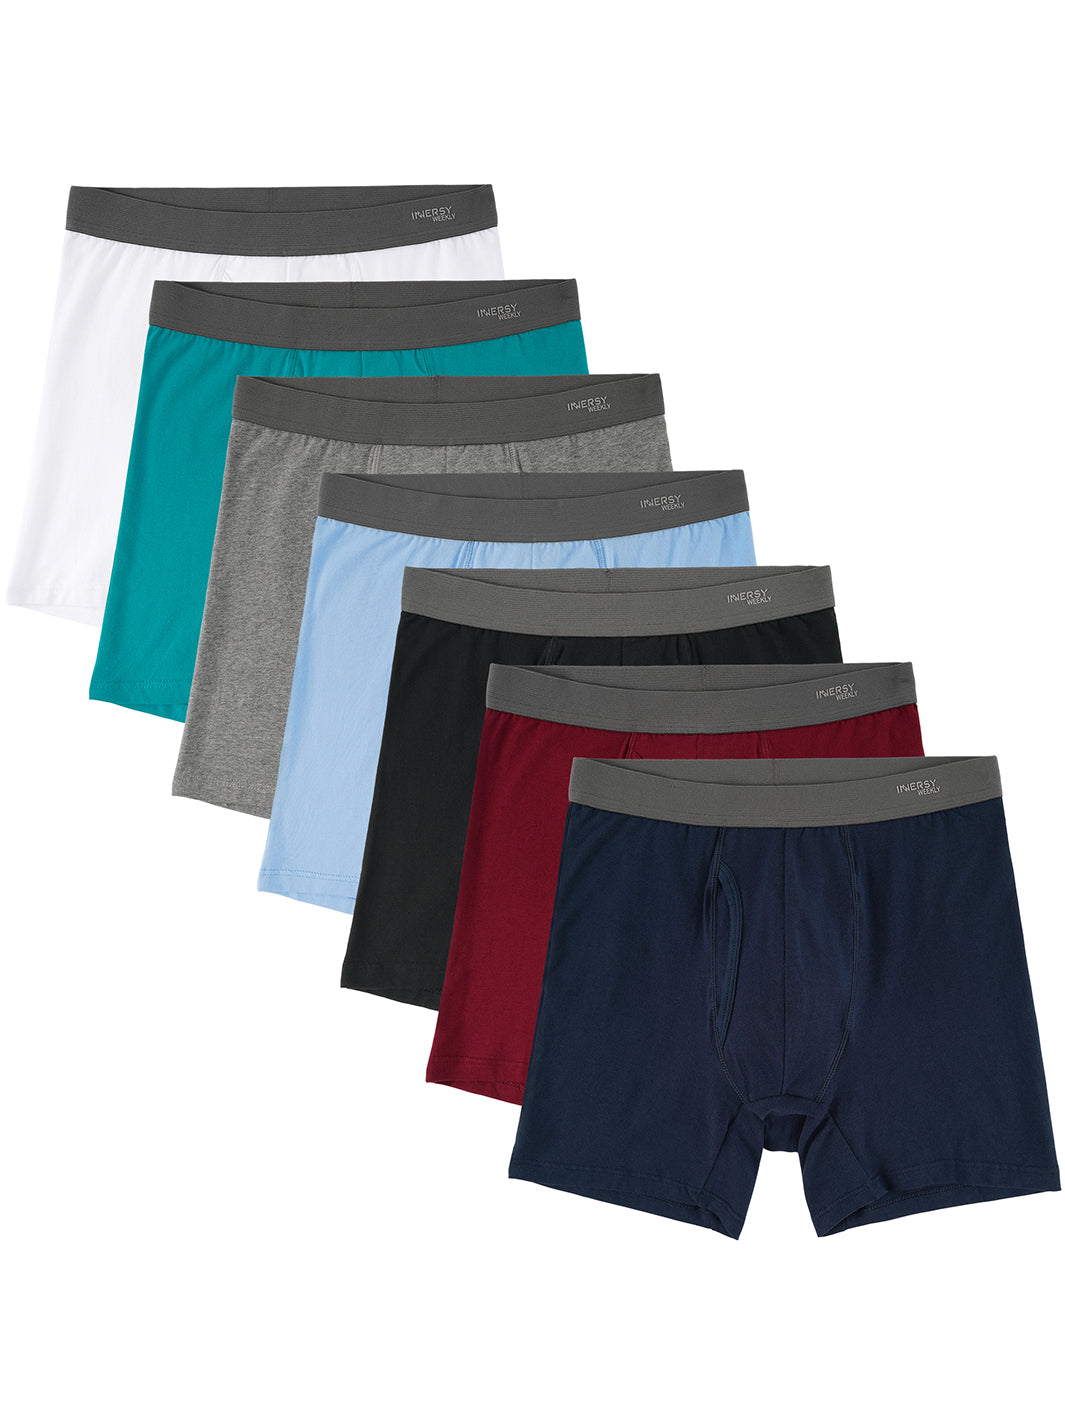 PUMIEY Mens Underwear Boxer Briefs Cotton (6-pack)